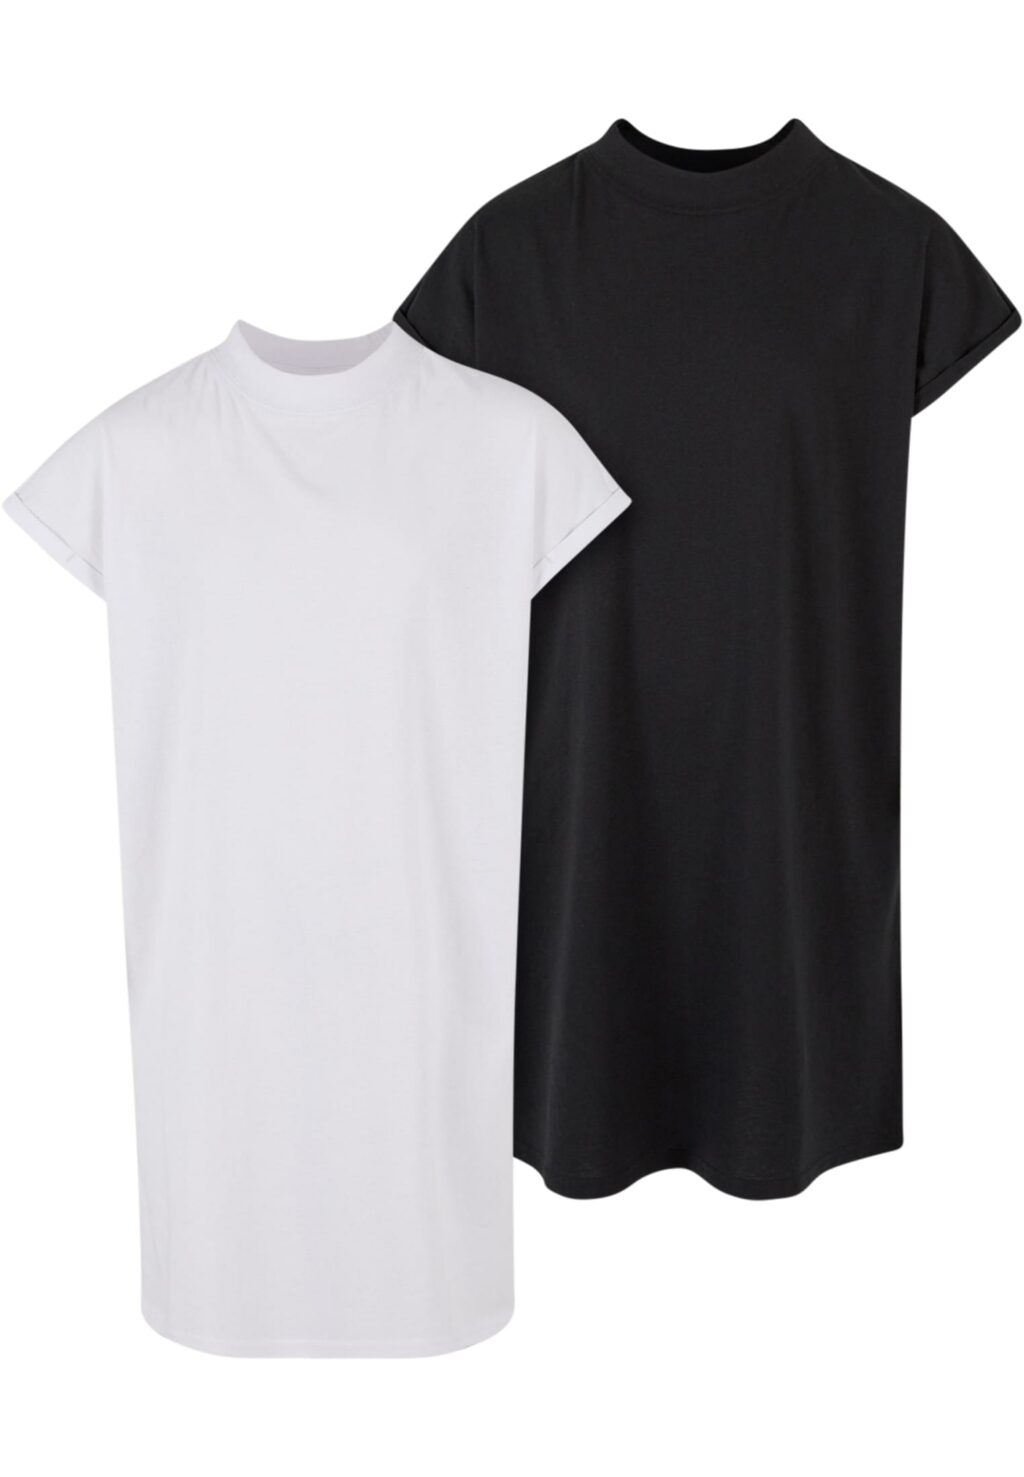 Girls Turtle Extended Shoulder Dress black+white UCK1910A